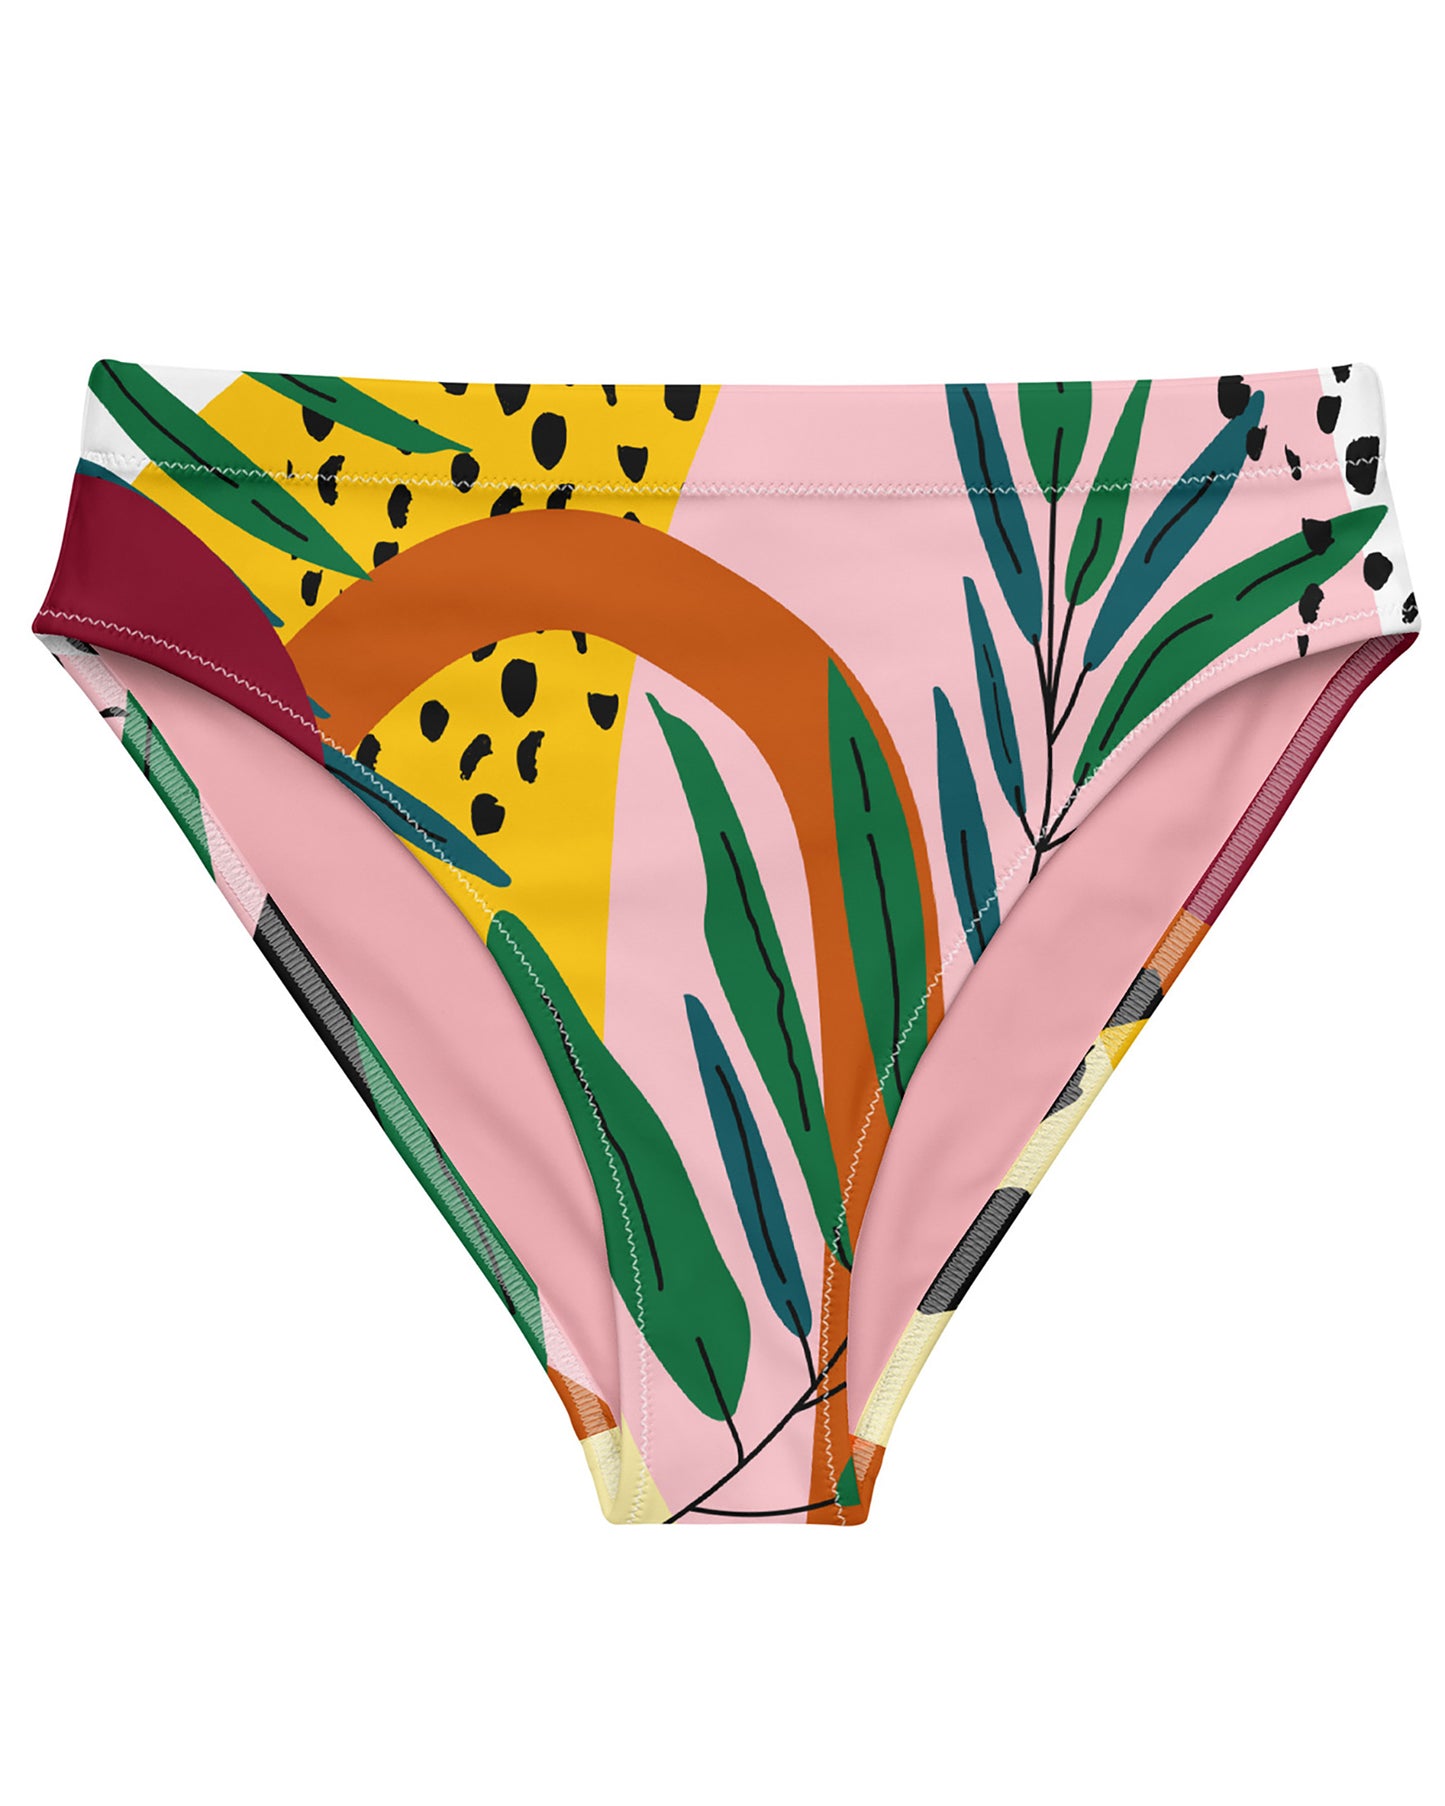 Abstract Botanical Recycled High-Waisted Bikini Bottom